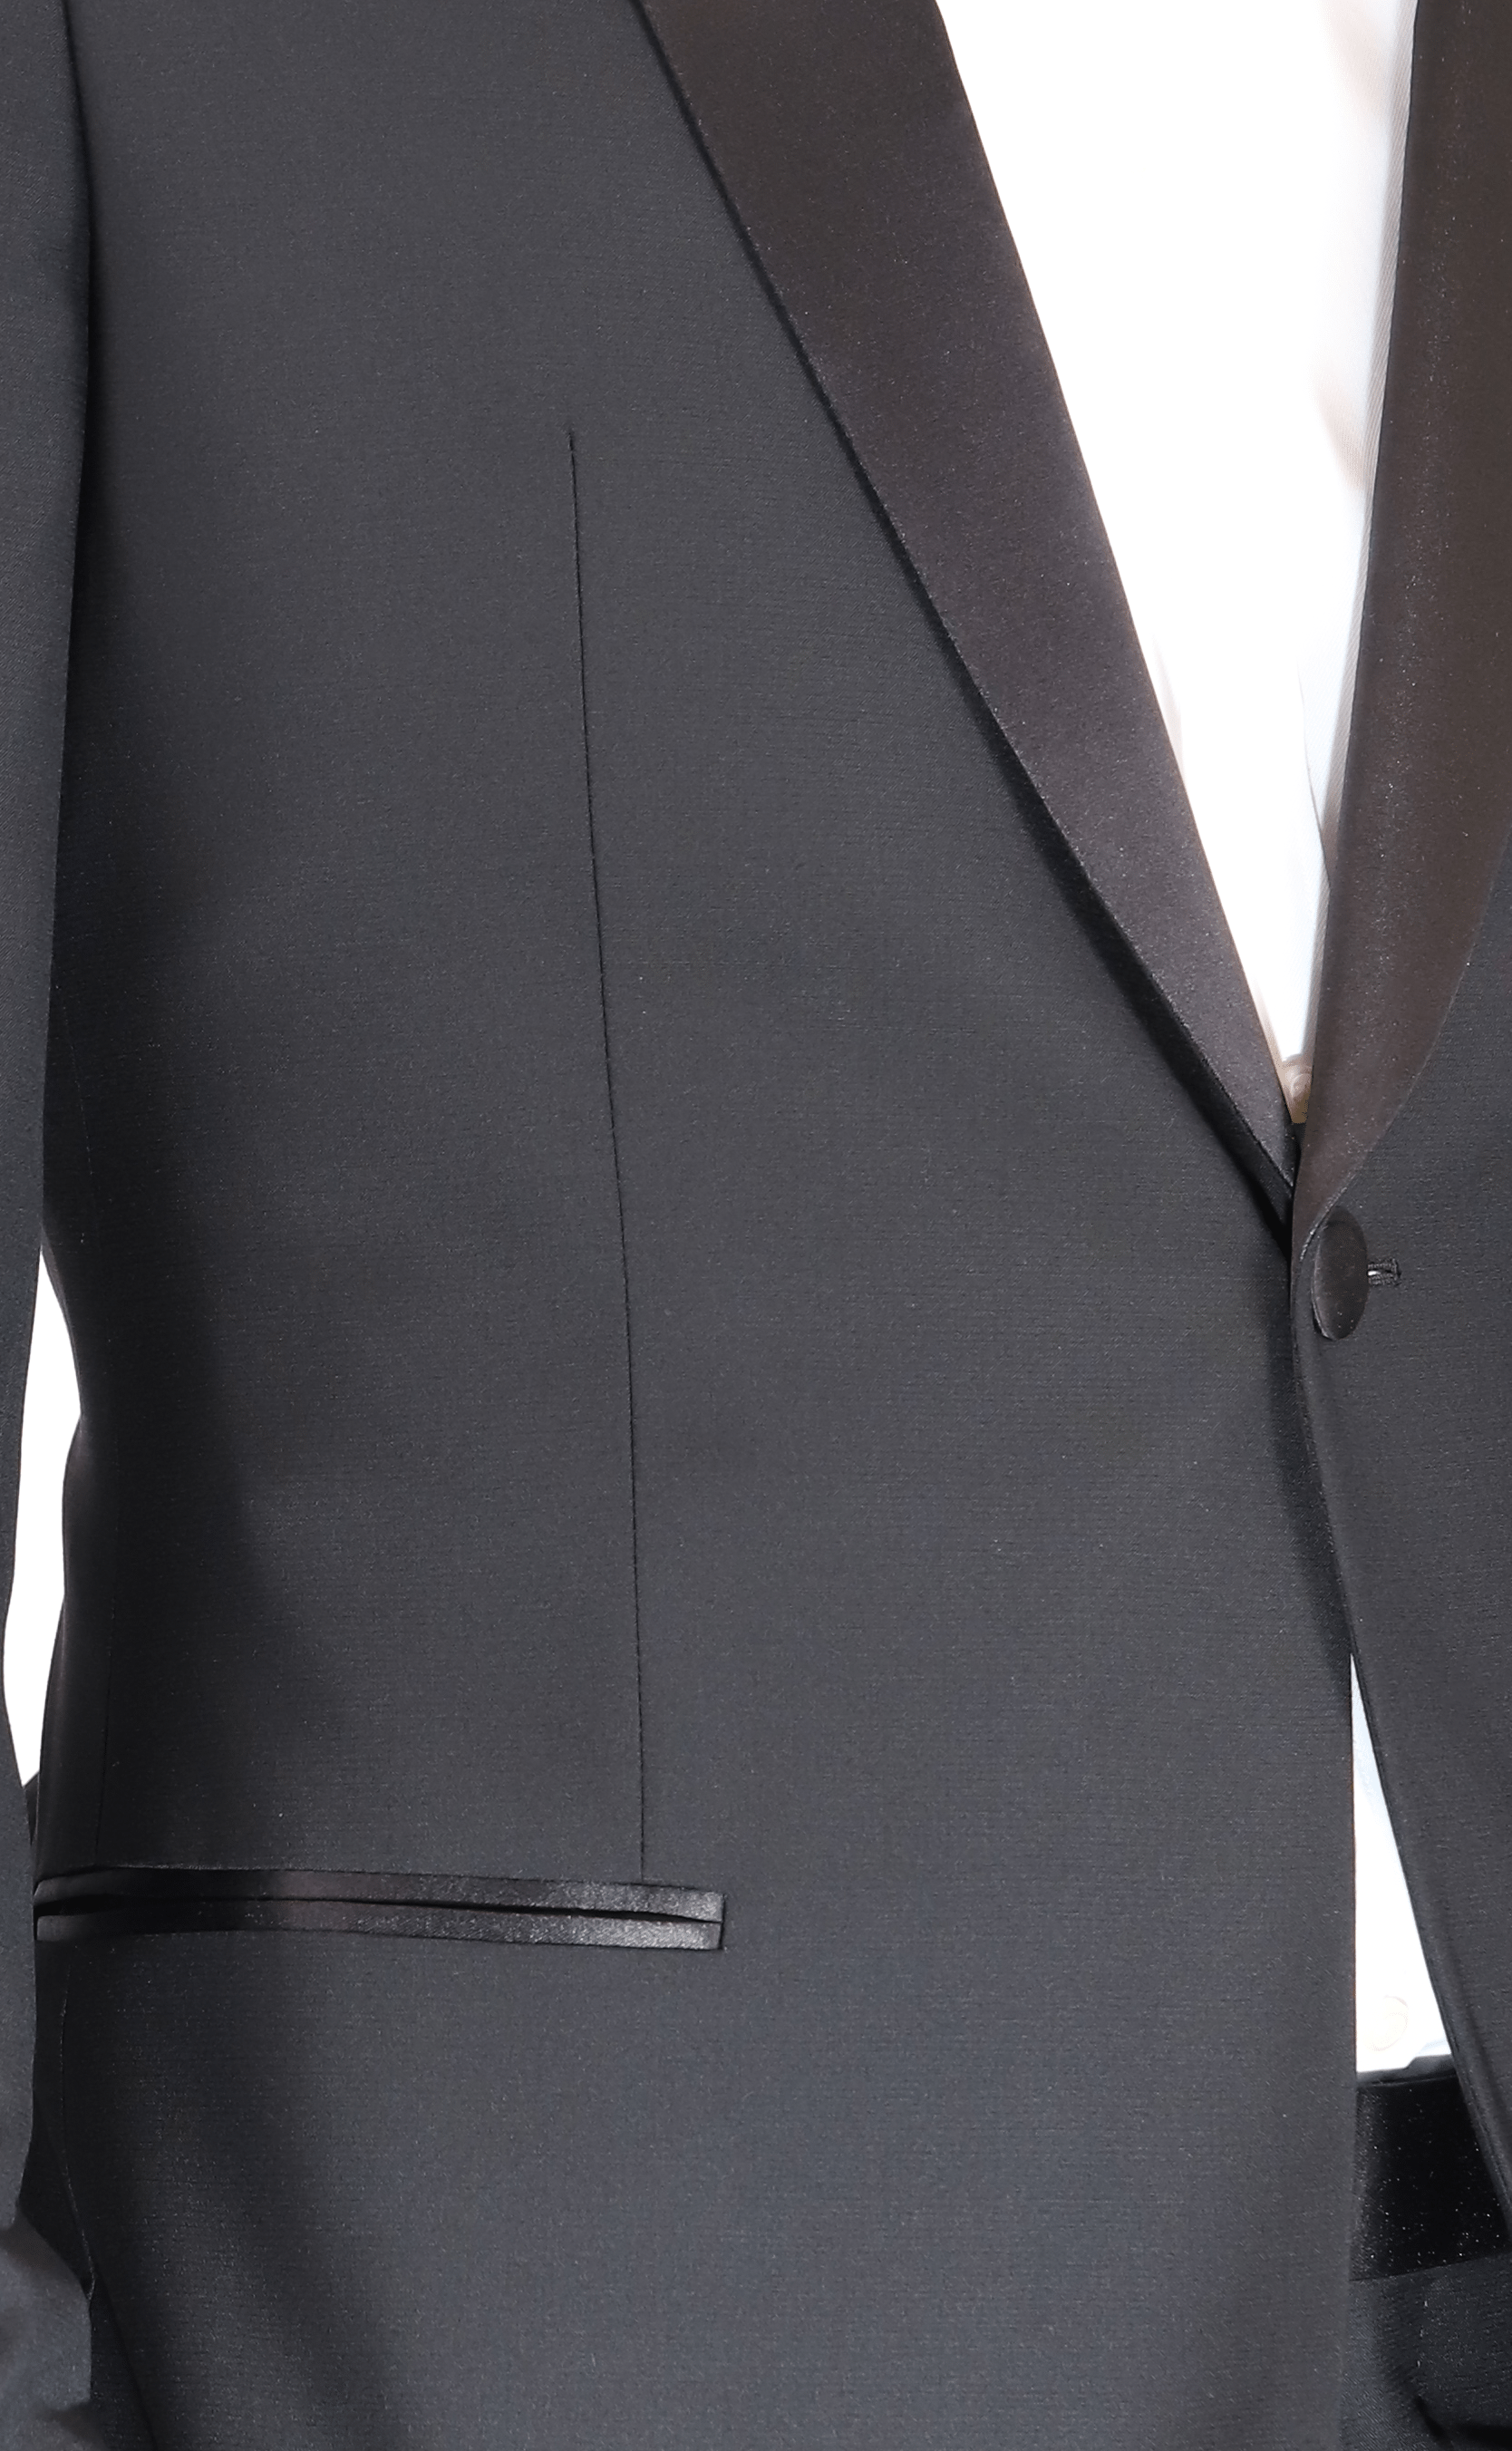 blujacket suits blujacket men s black italian wool canvassed slim fit shawl lapel tuxedo suit